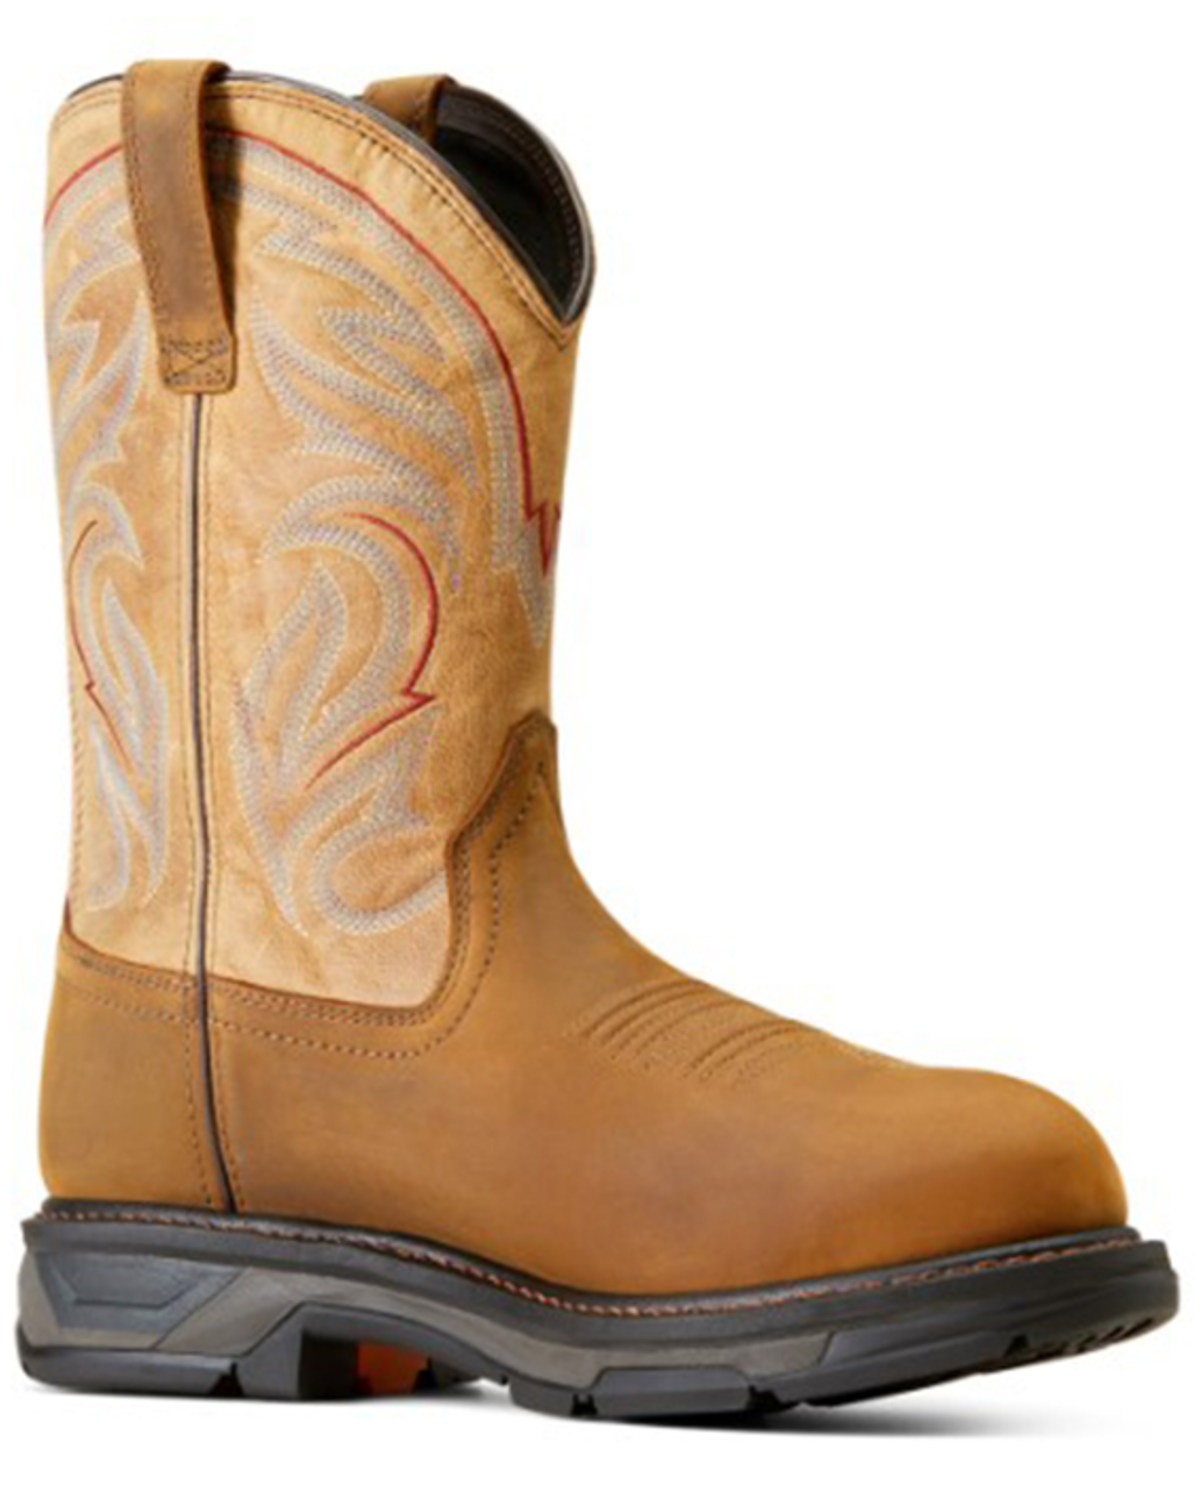 Ariat Men's WorkHog® XT Waterproof Work Boots - Carbon Toe